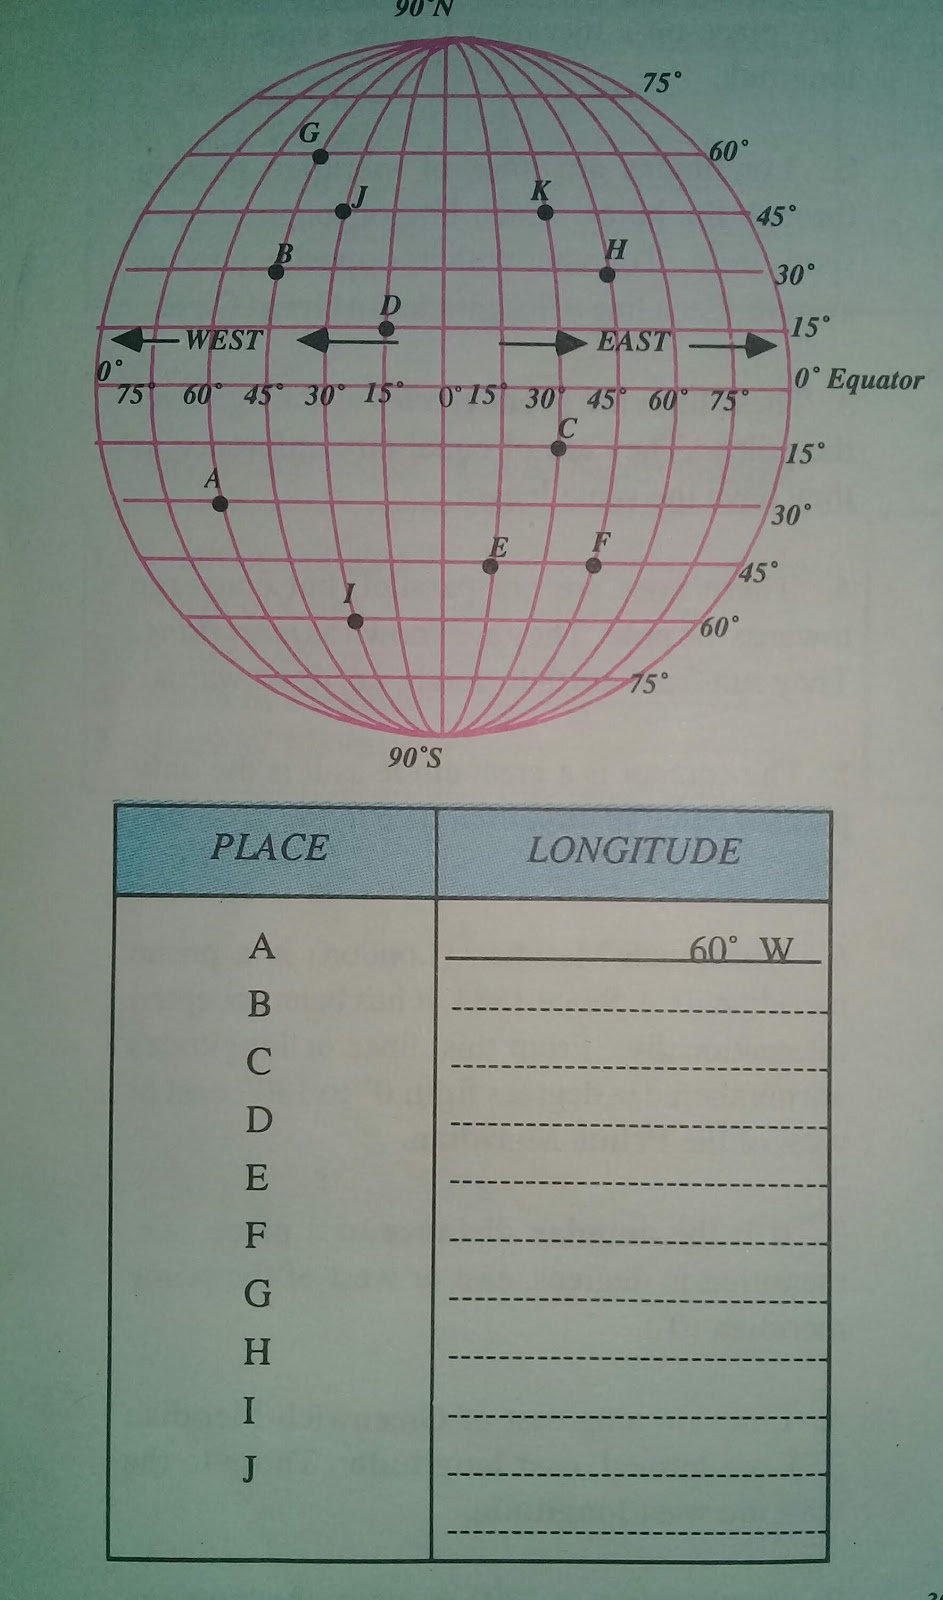 Latitude and Longitude Worksheets For Latitude And Longitude Worksheet Answers